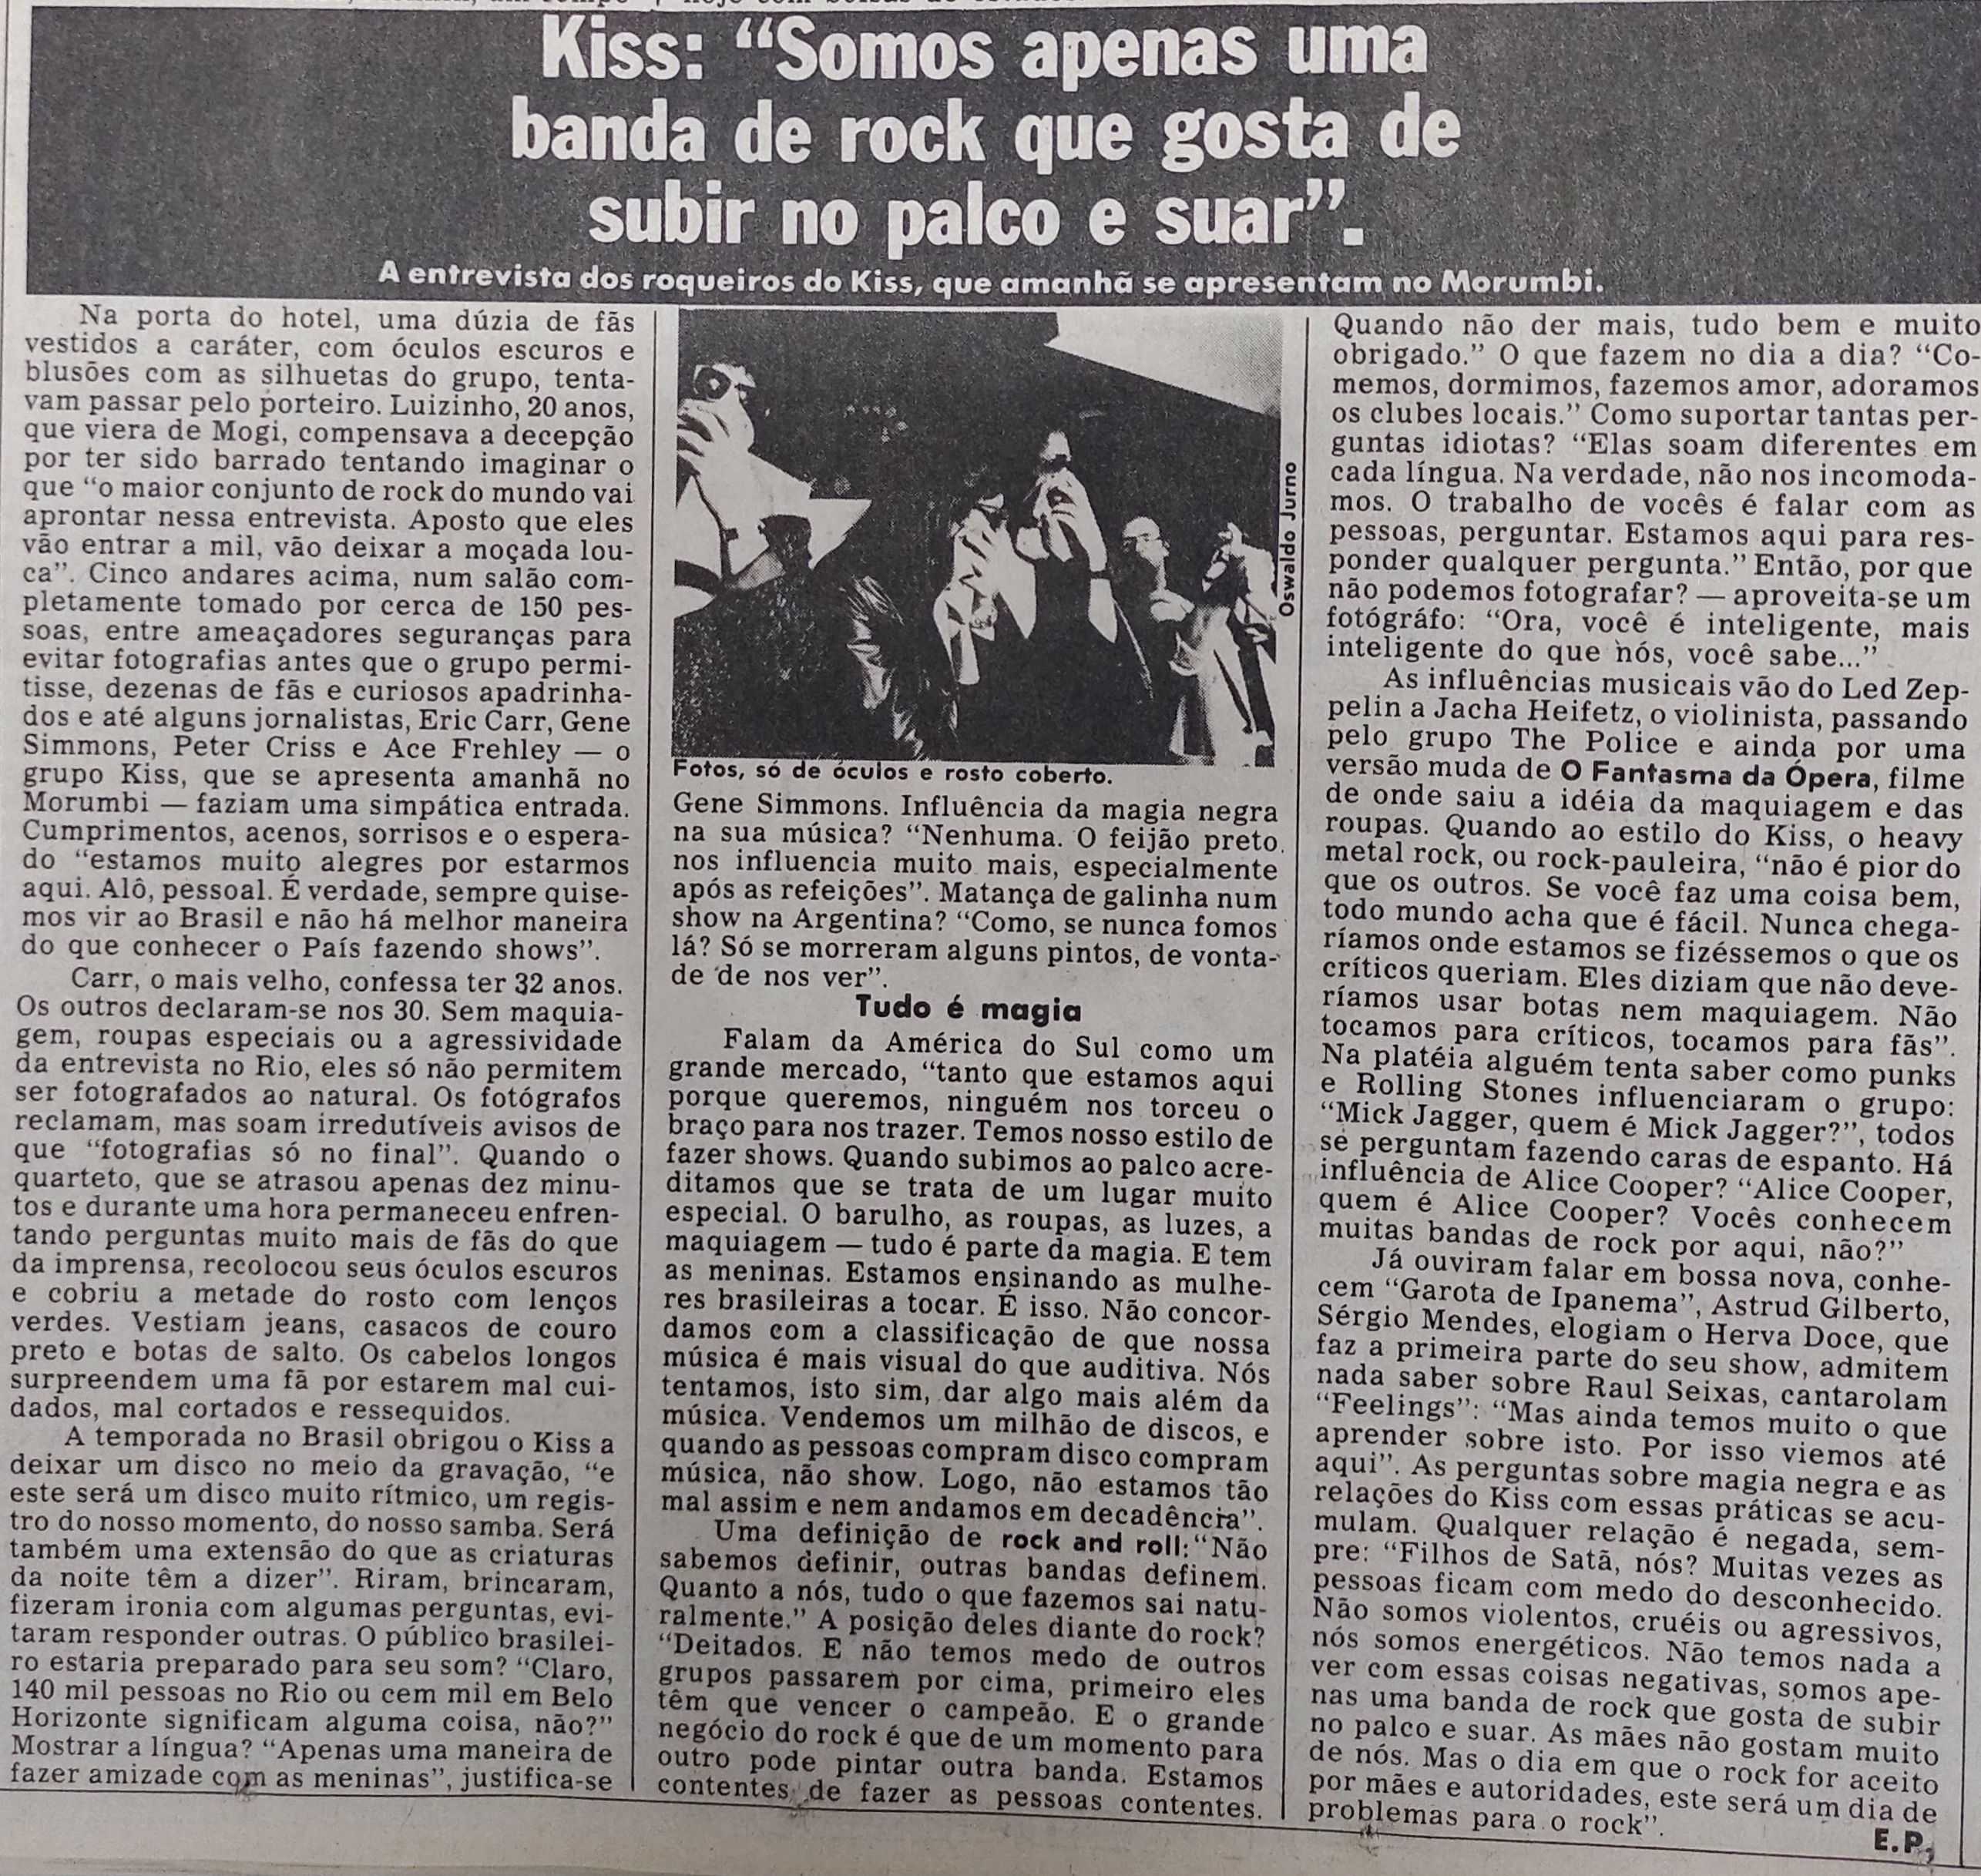 Primeira turnê do Kiss no Brasil fascinou geração 80 com lendas